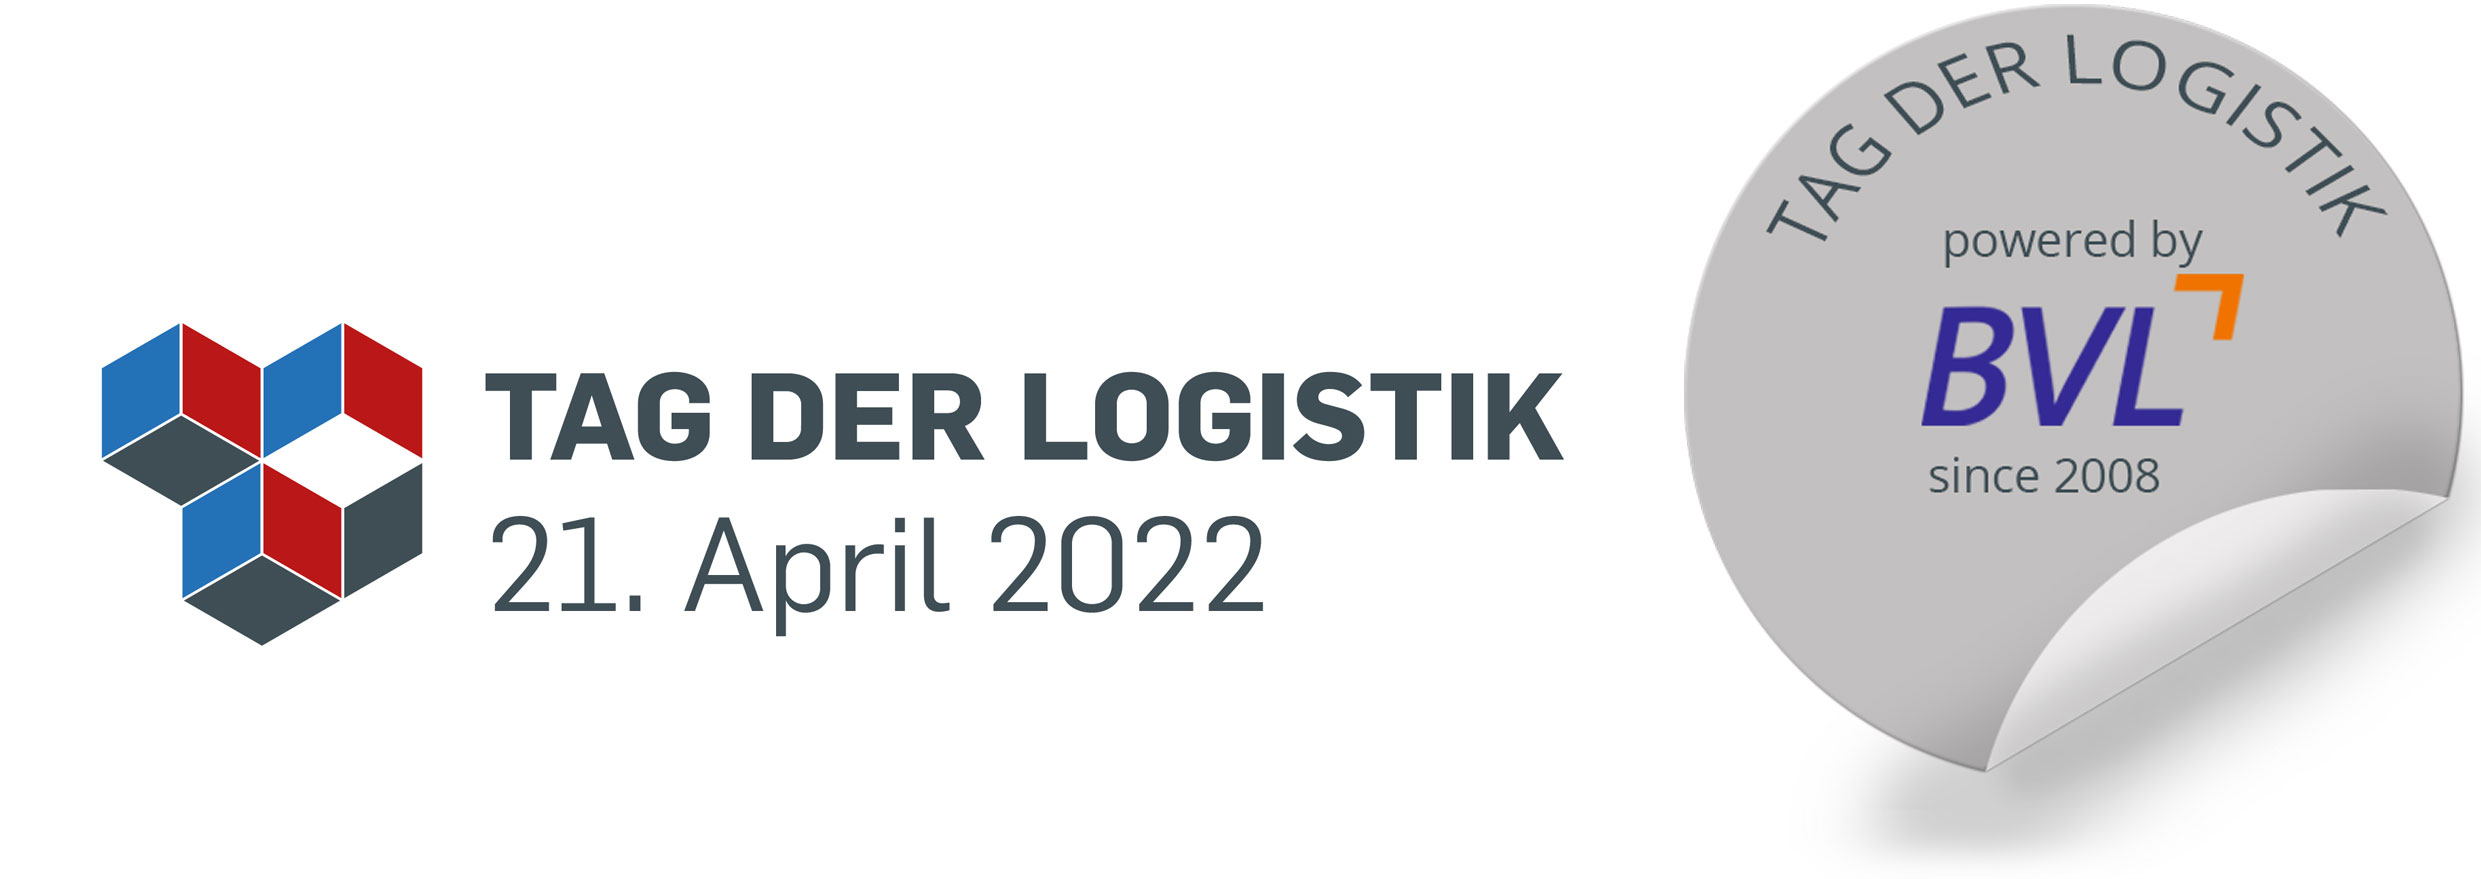 Tag der Logistik 2022